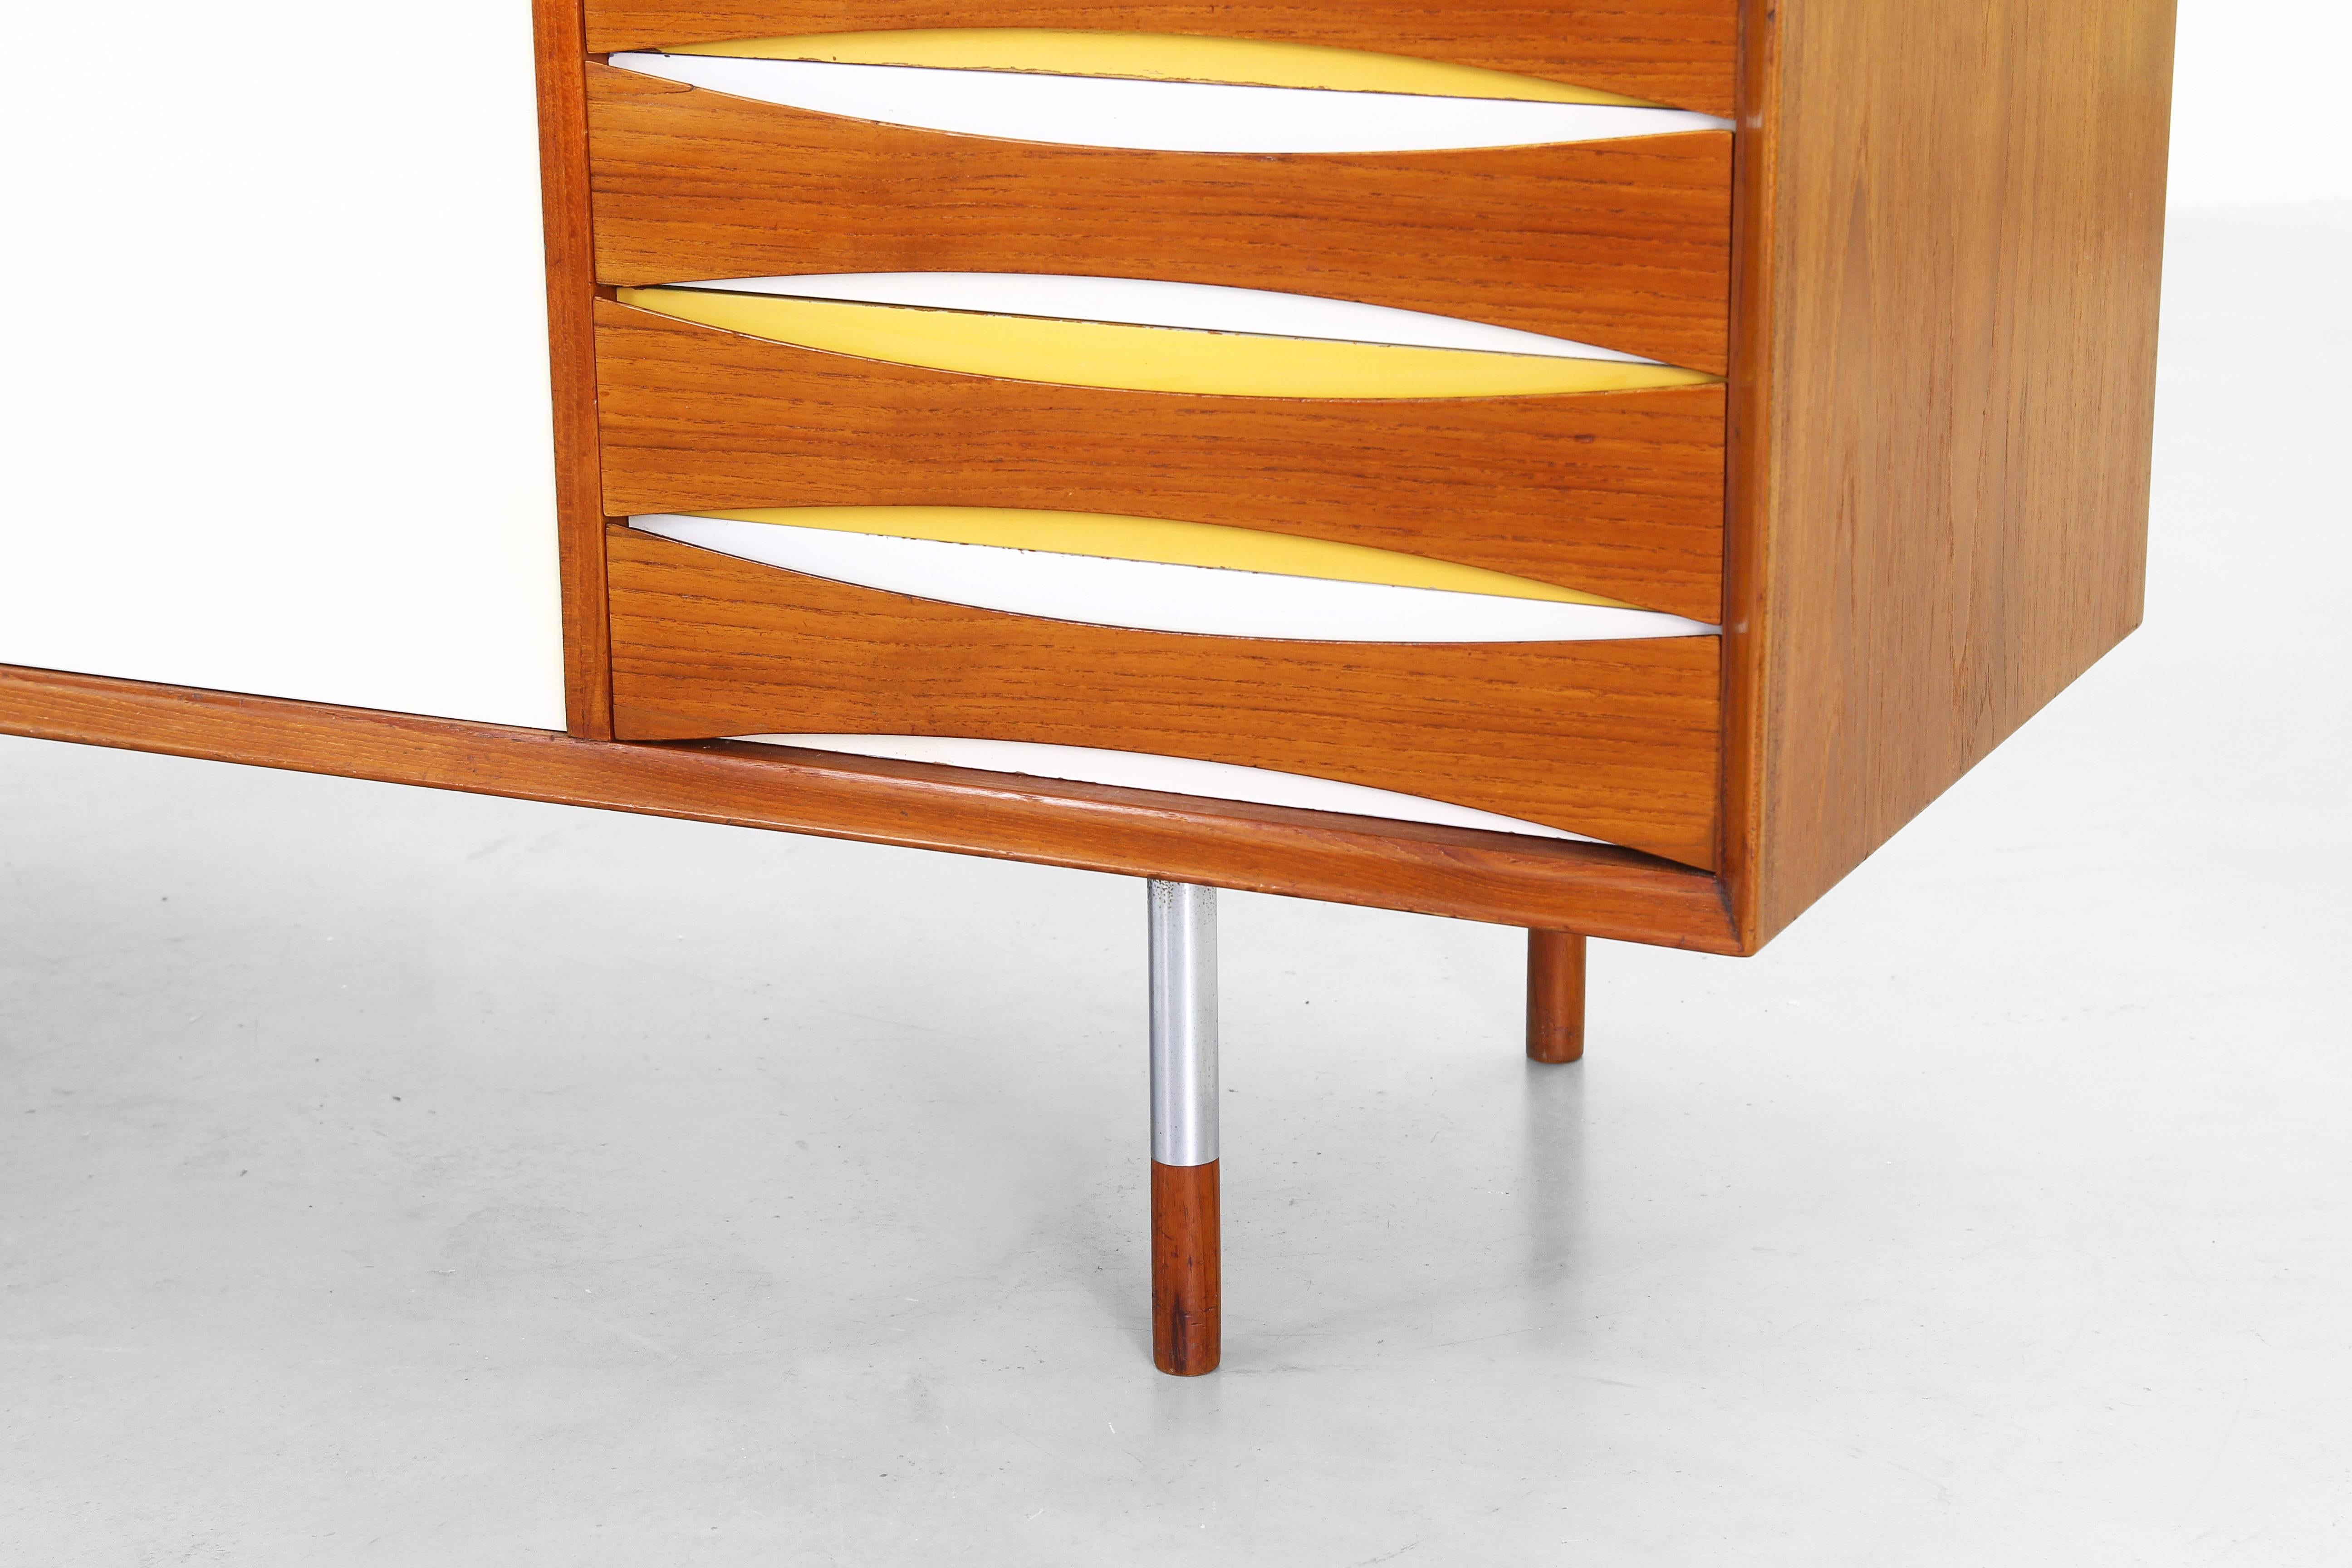 Rare Sideboard by Arne Vodder for Sibast Furniture Mod. 29, Denmark, 1958 2